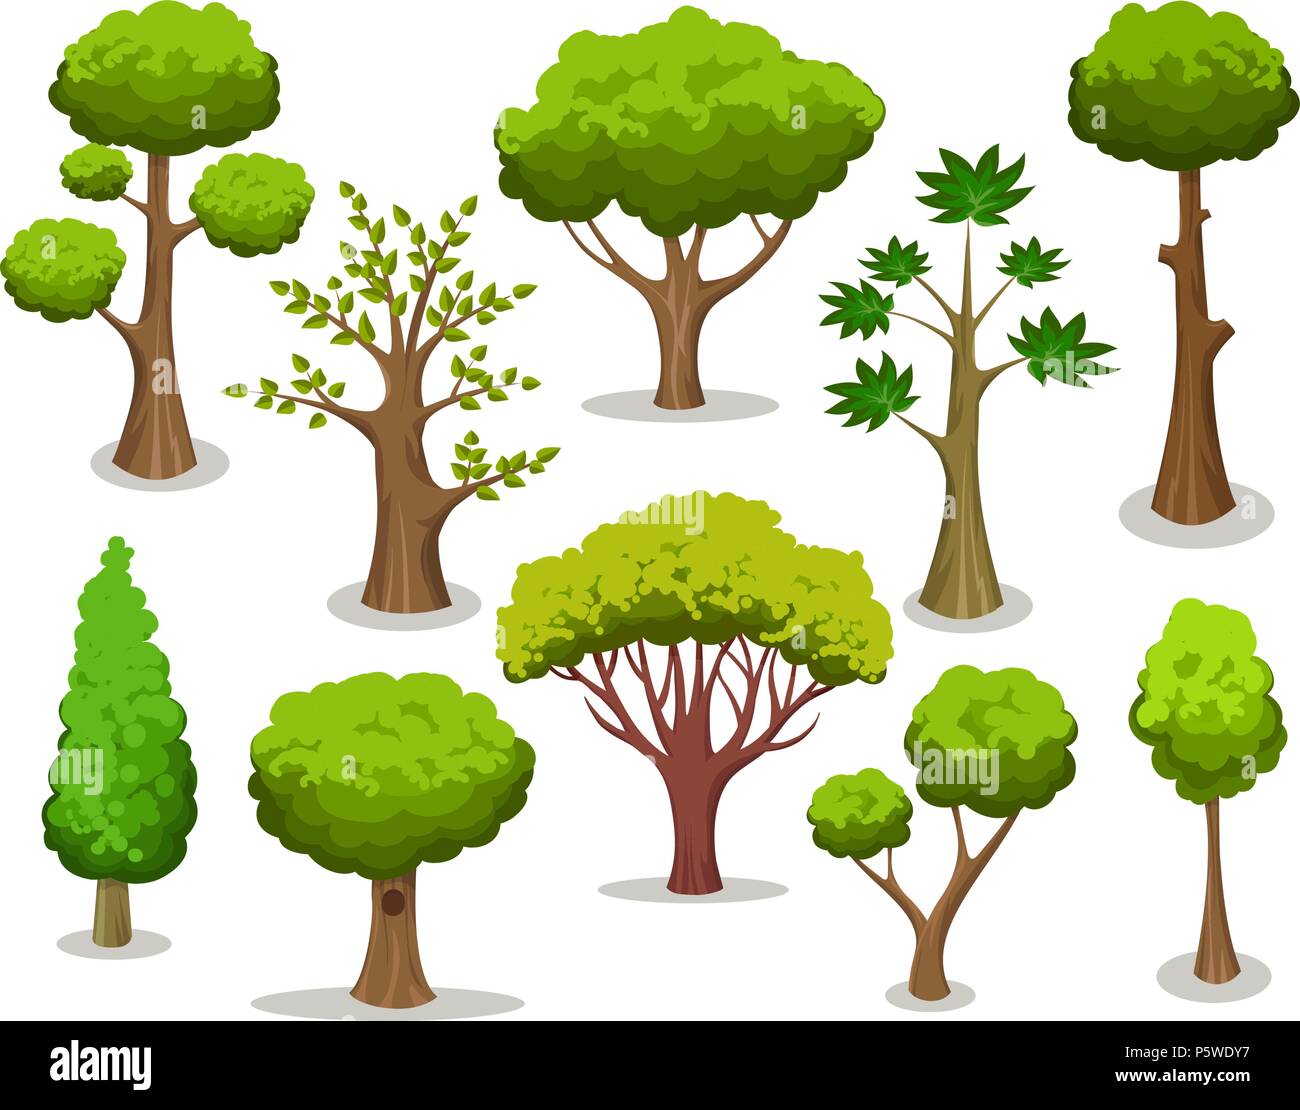 Baum Kollektion Cartoon Naturliche Baume Clipart Auf Weissem Hintergrund Fur Naturlich Vektorgrafiken Isoliert Stock Vektorgrafik Alamy